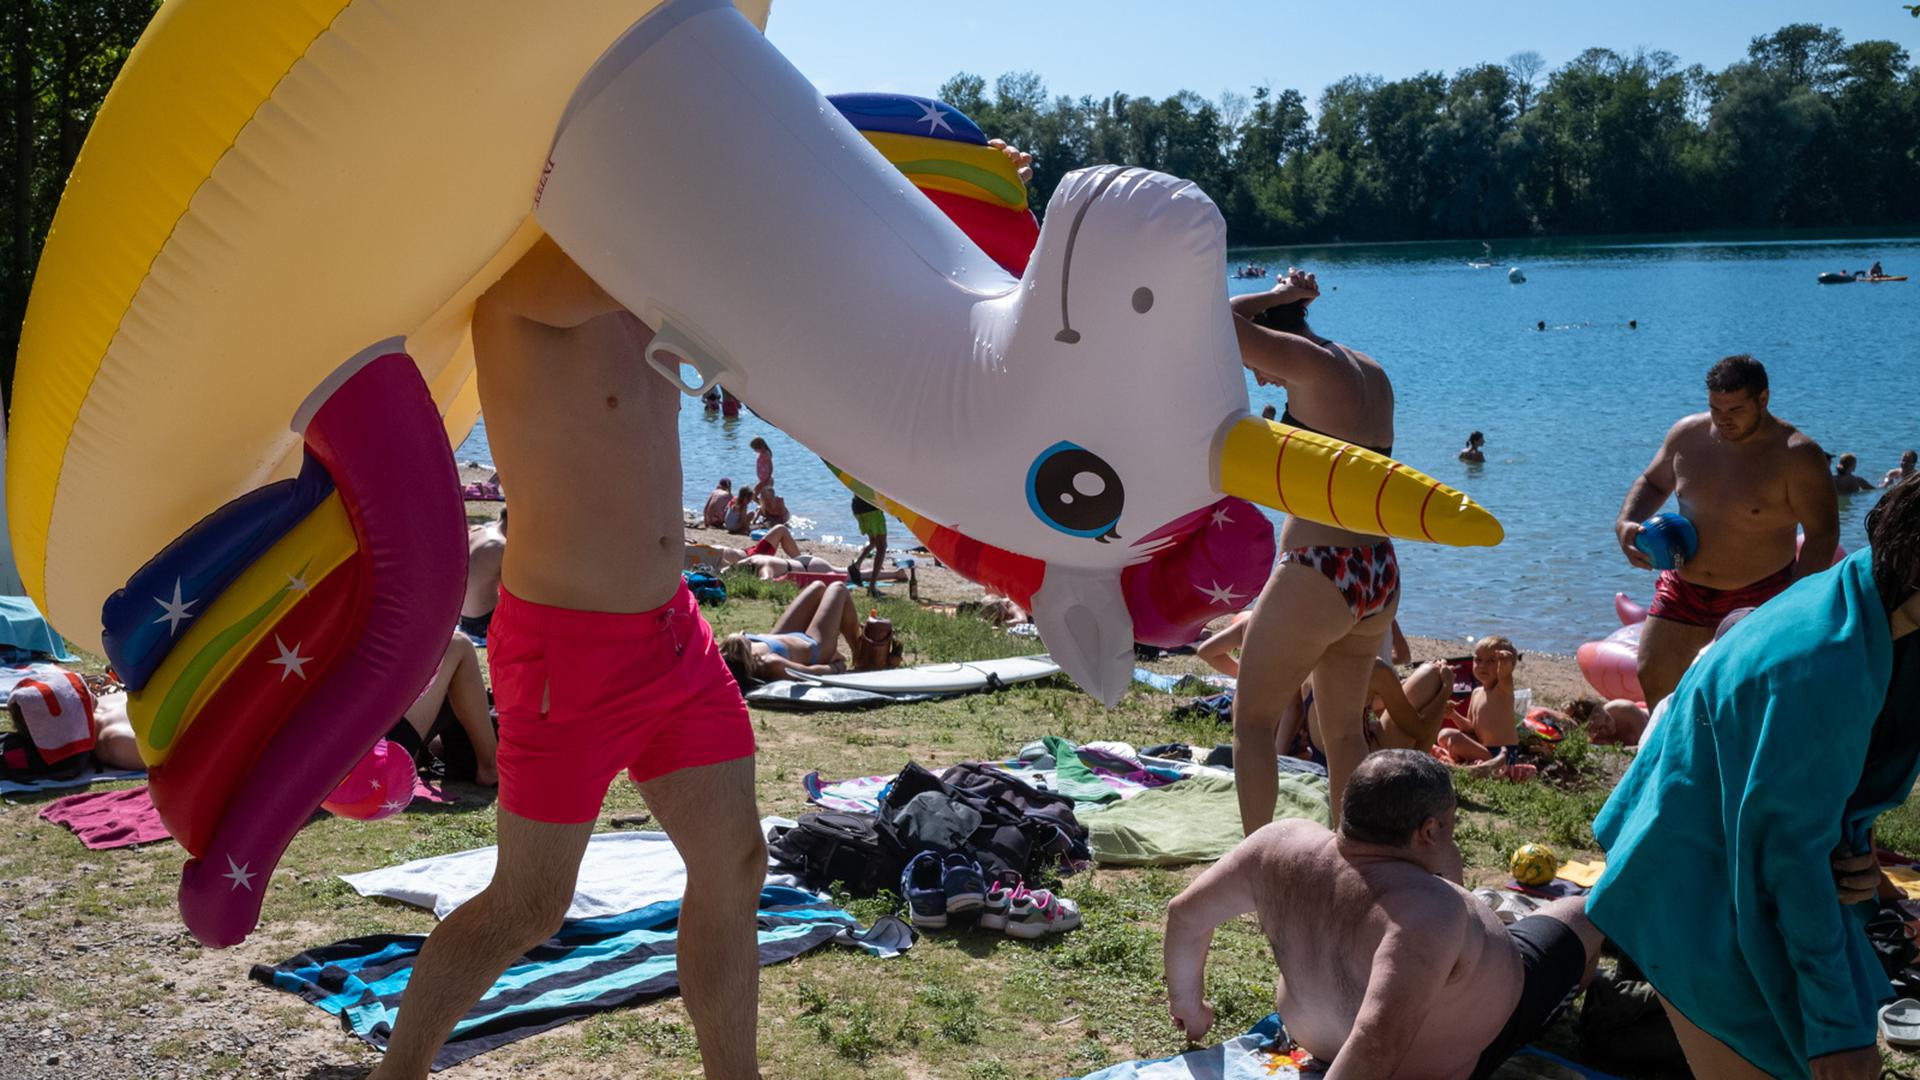 Ein Sommer-Sonntag am Baggersee Grötzingen mit vielen Besuchern und Sonne pur.